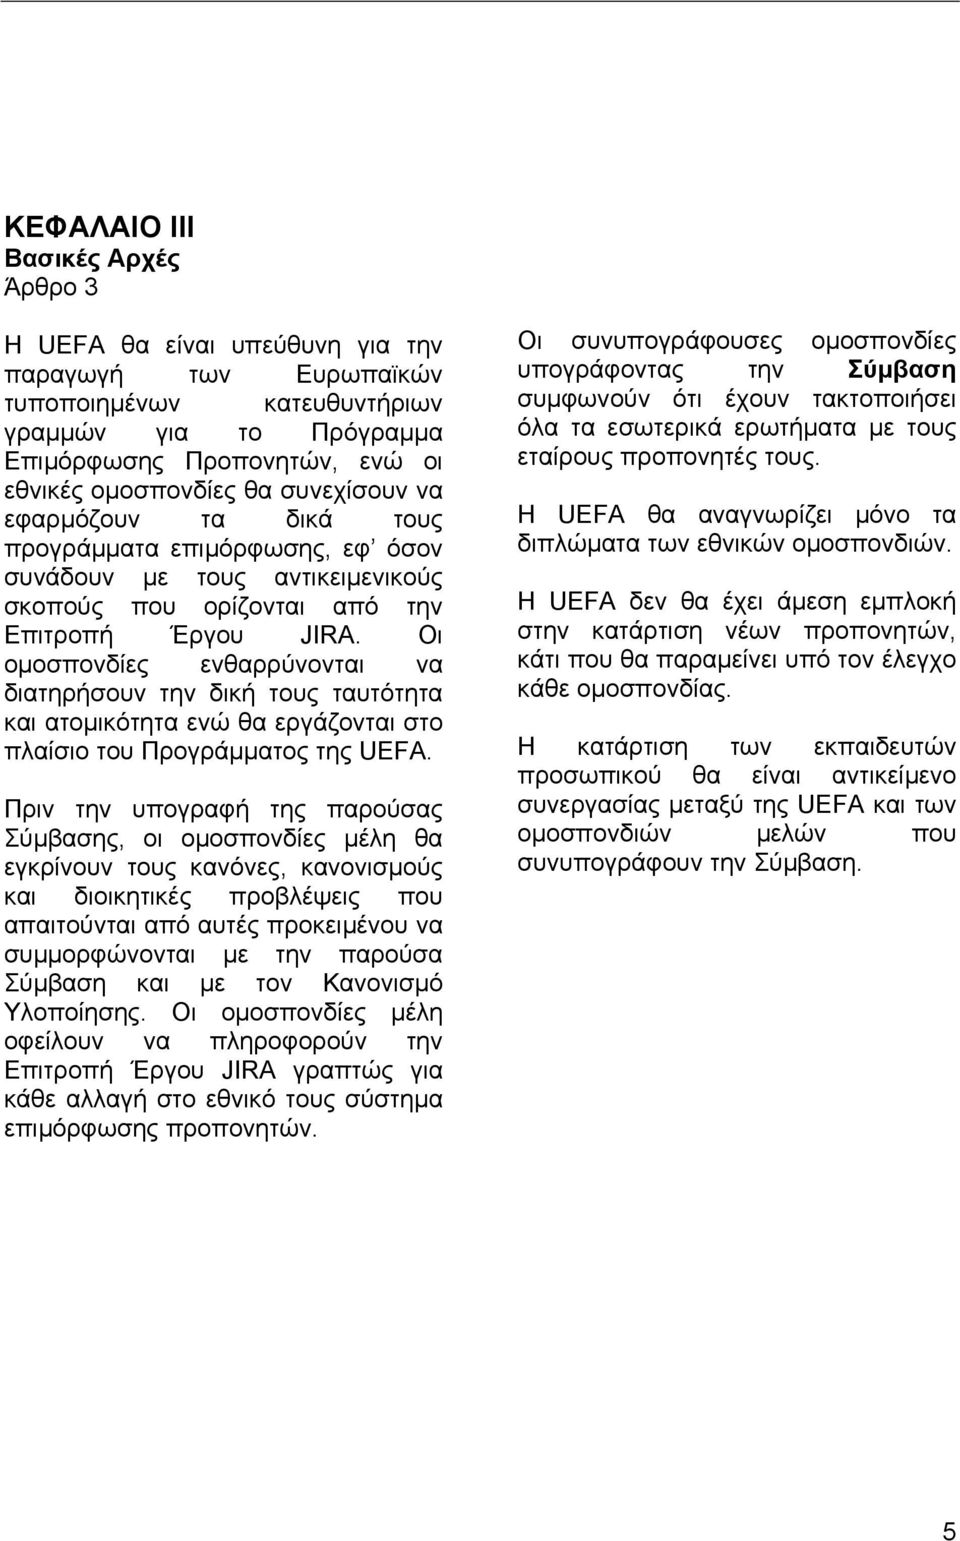 Οι οµοσπονδίες ενθαρρύνονται να διατηρήσουν την δική τους ταυτότητα και ατοµικότητα ενώ θα εργάζονται στο πλαίσιο του Προγράµµατος της UEFA.